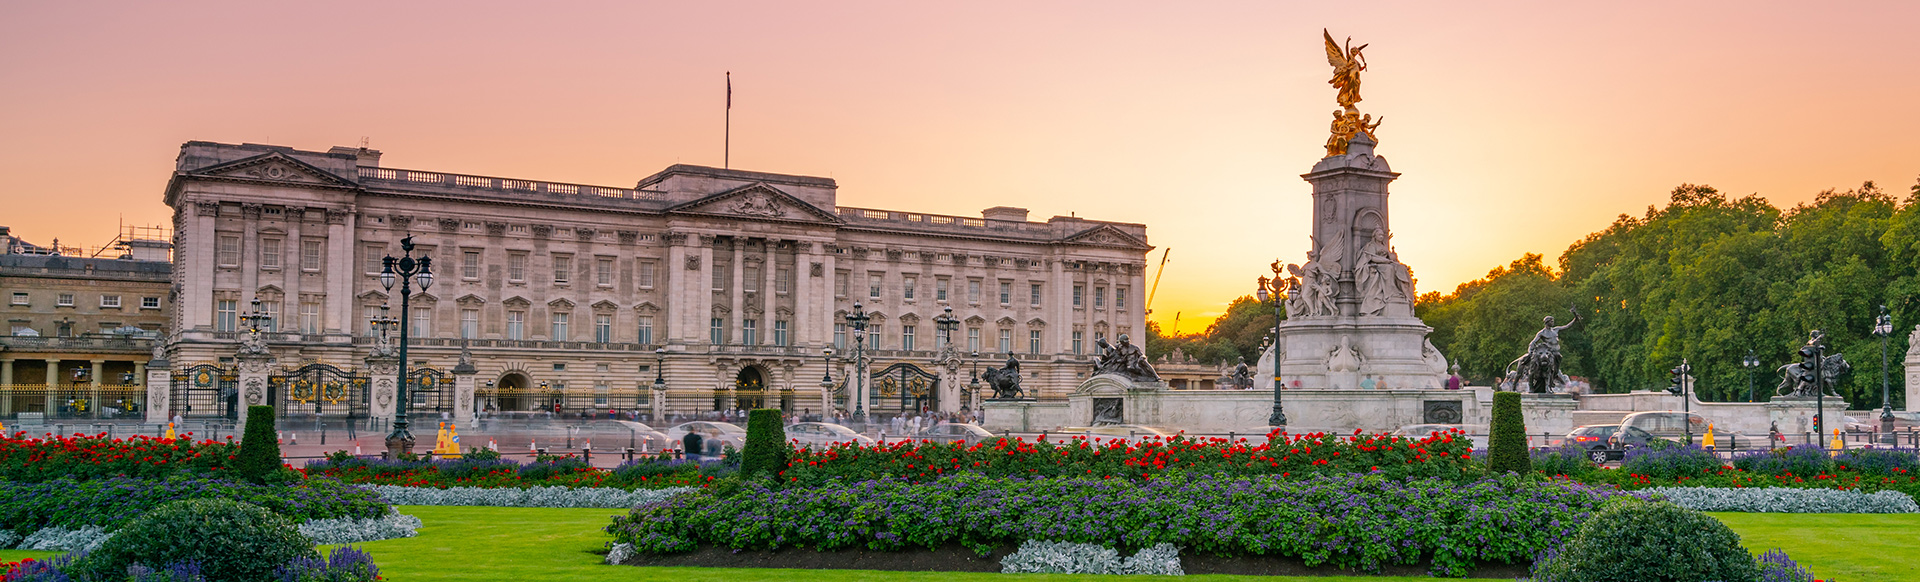 Buckingham Palace and memorial garden at sunset